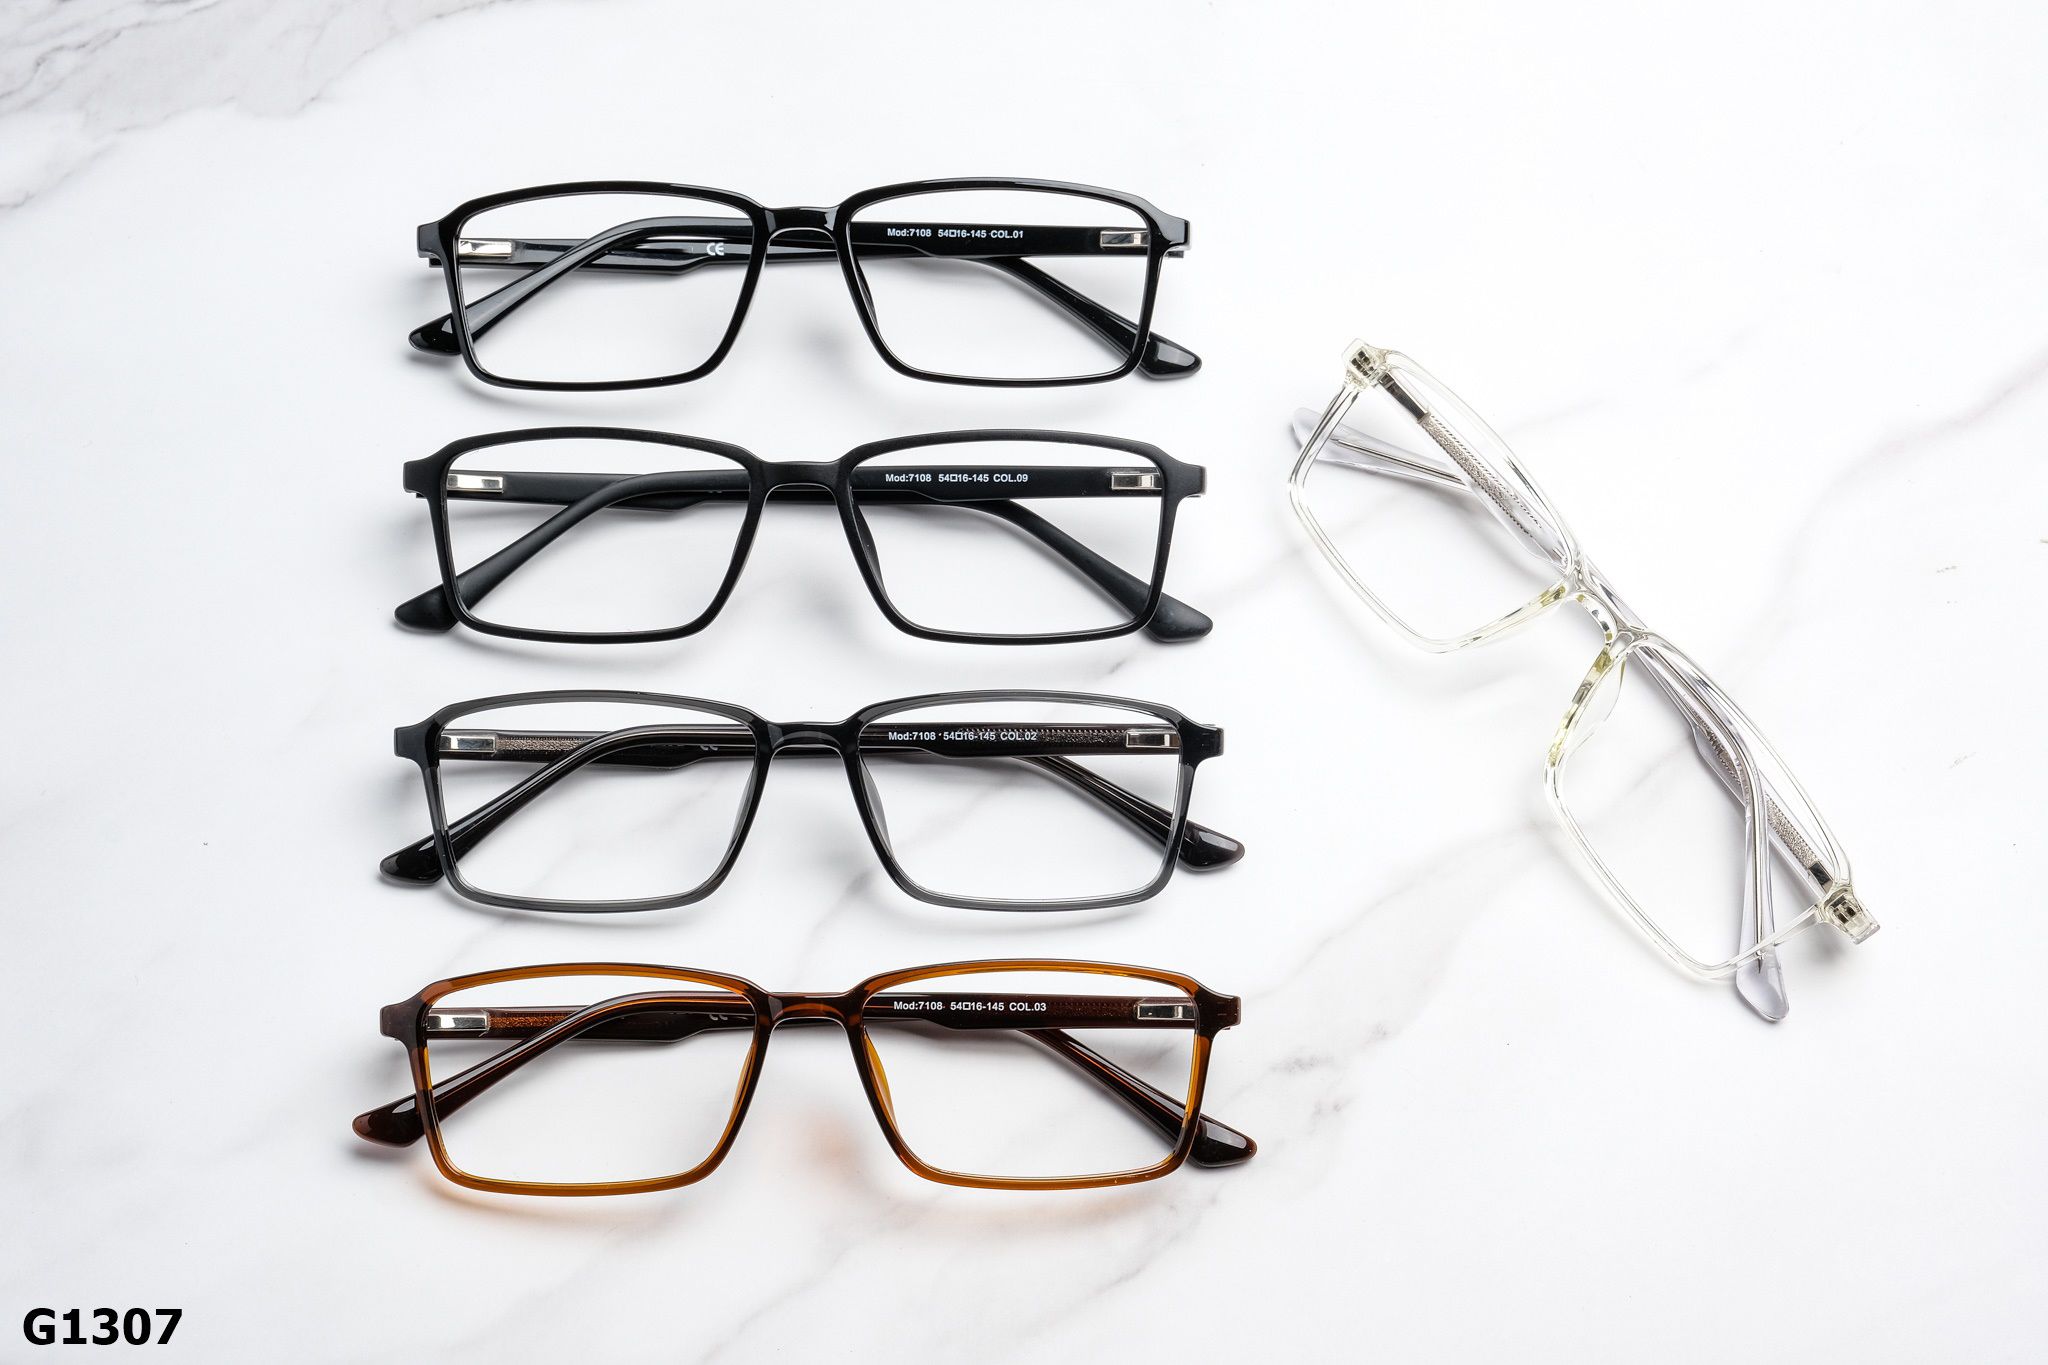  Rex-ton Eyewear - Glasses - G1307 